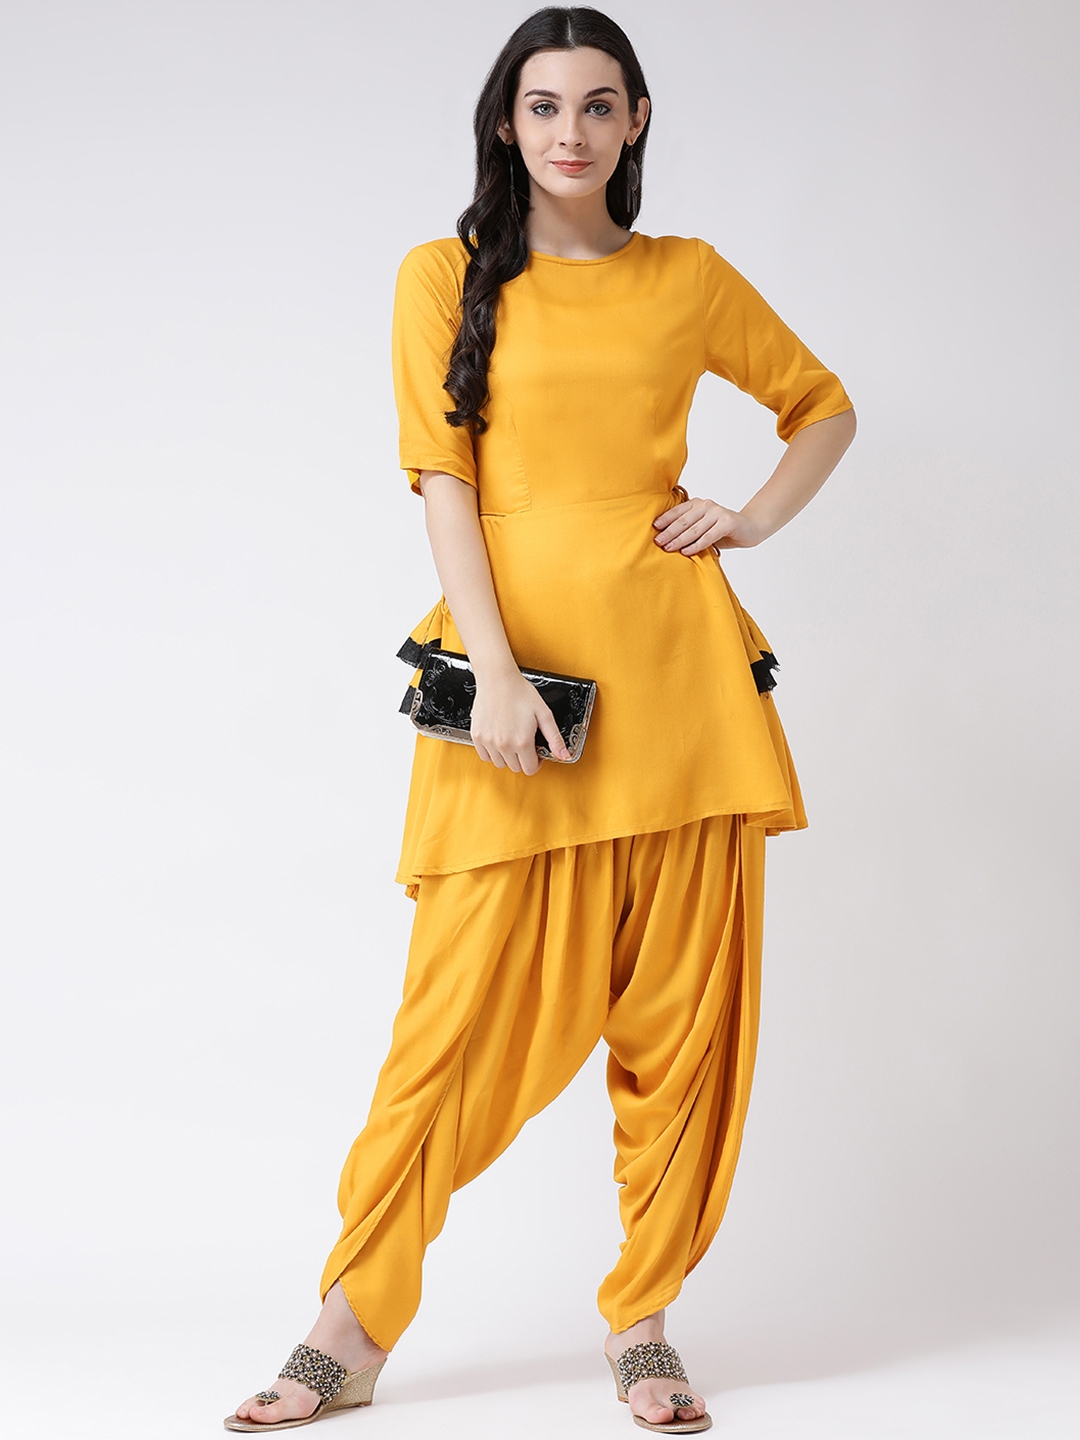 dhoti dress for women